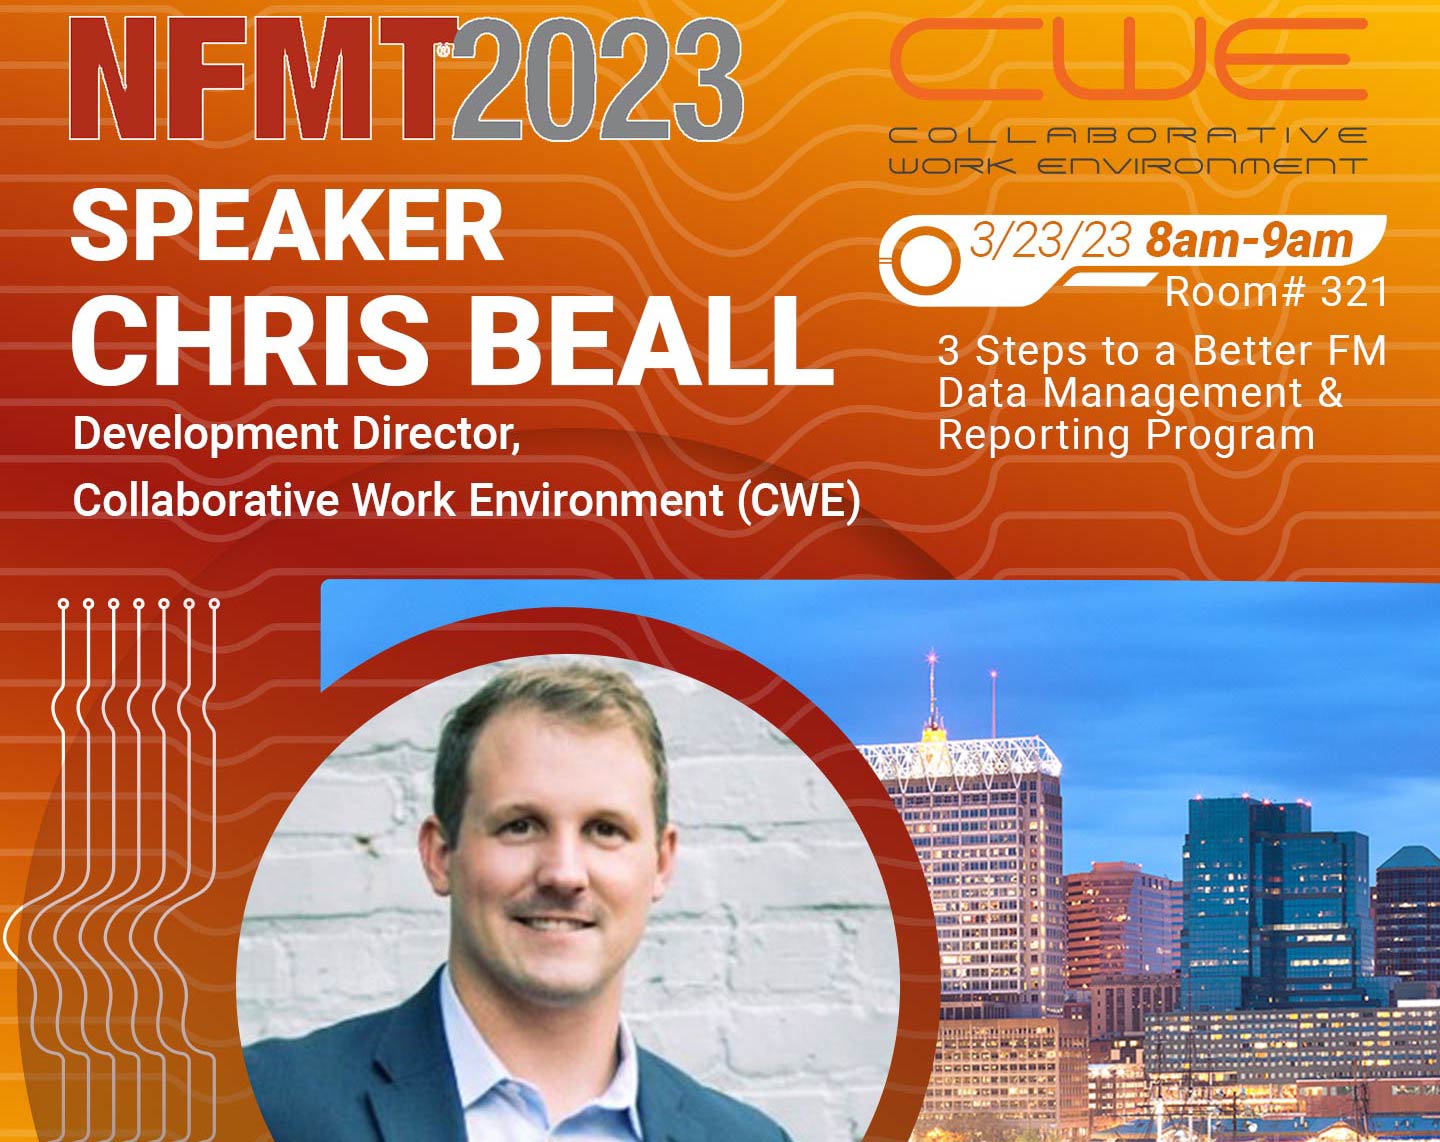 NFMT 2023 Speaker Highlight - Chris Beall